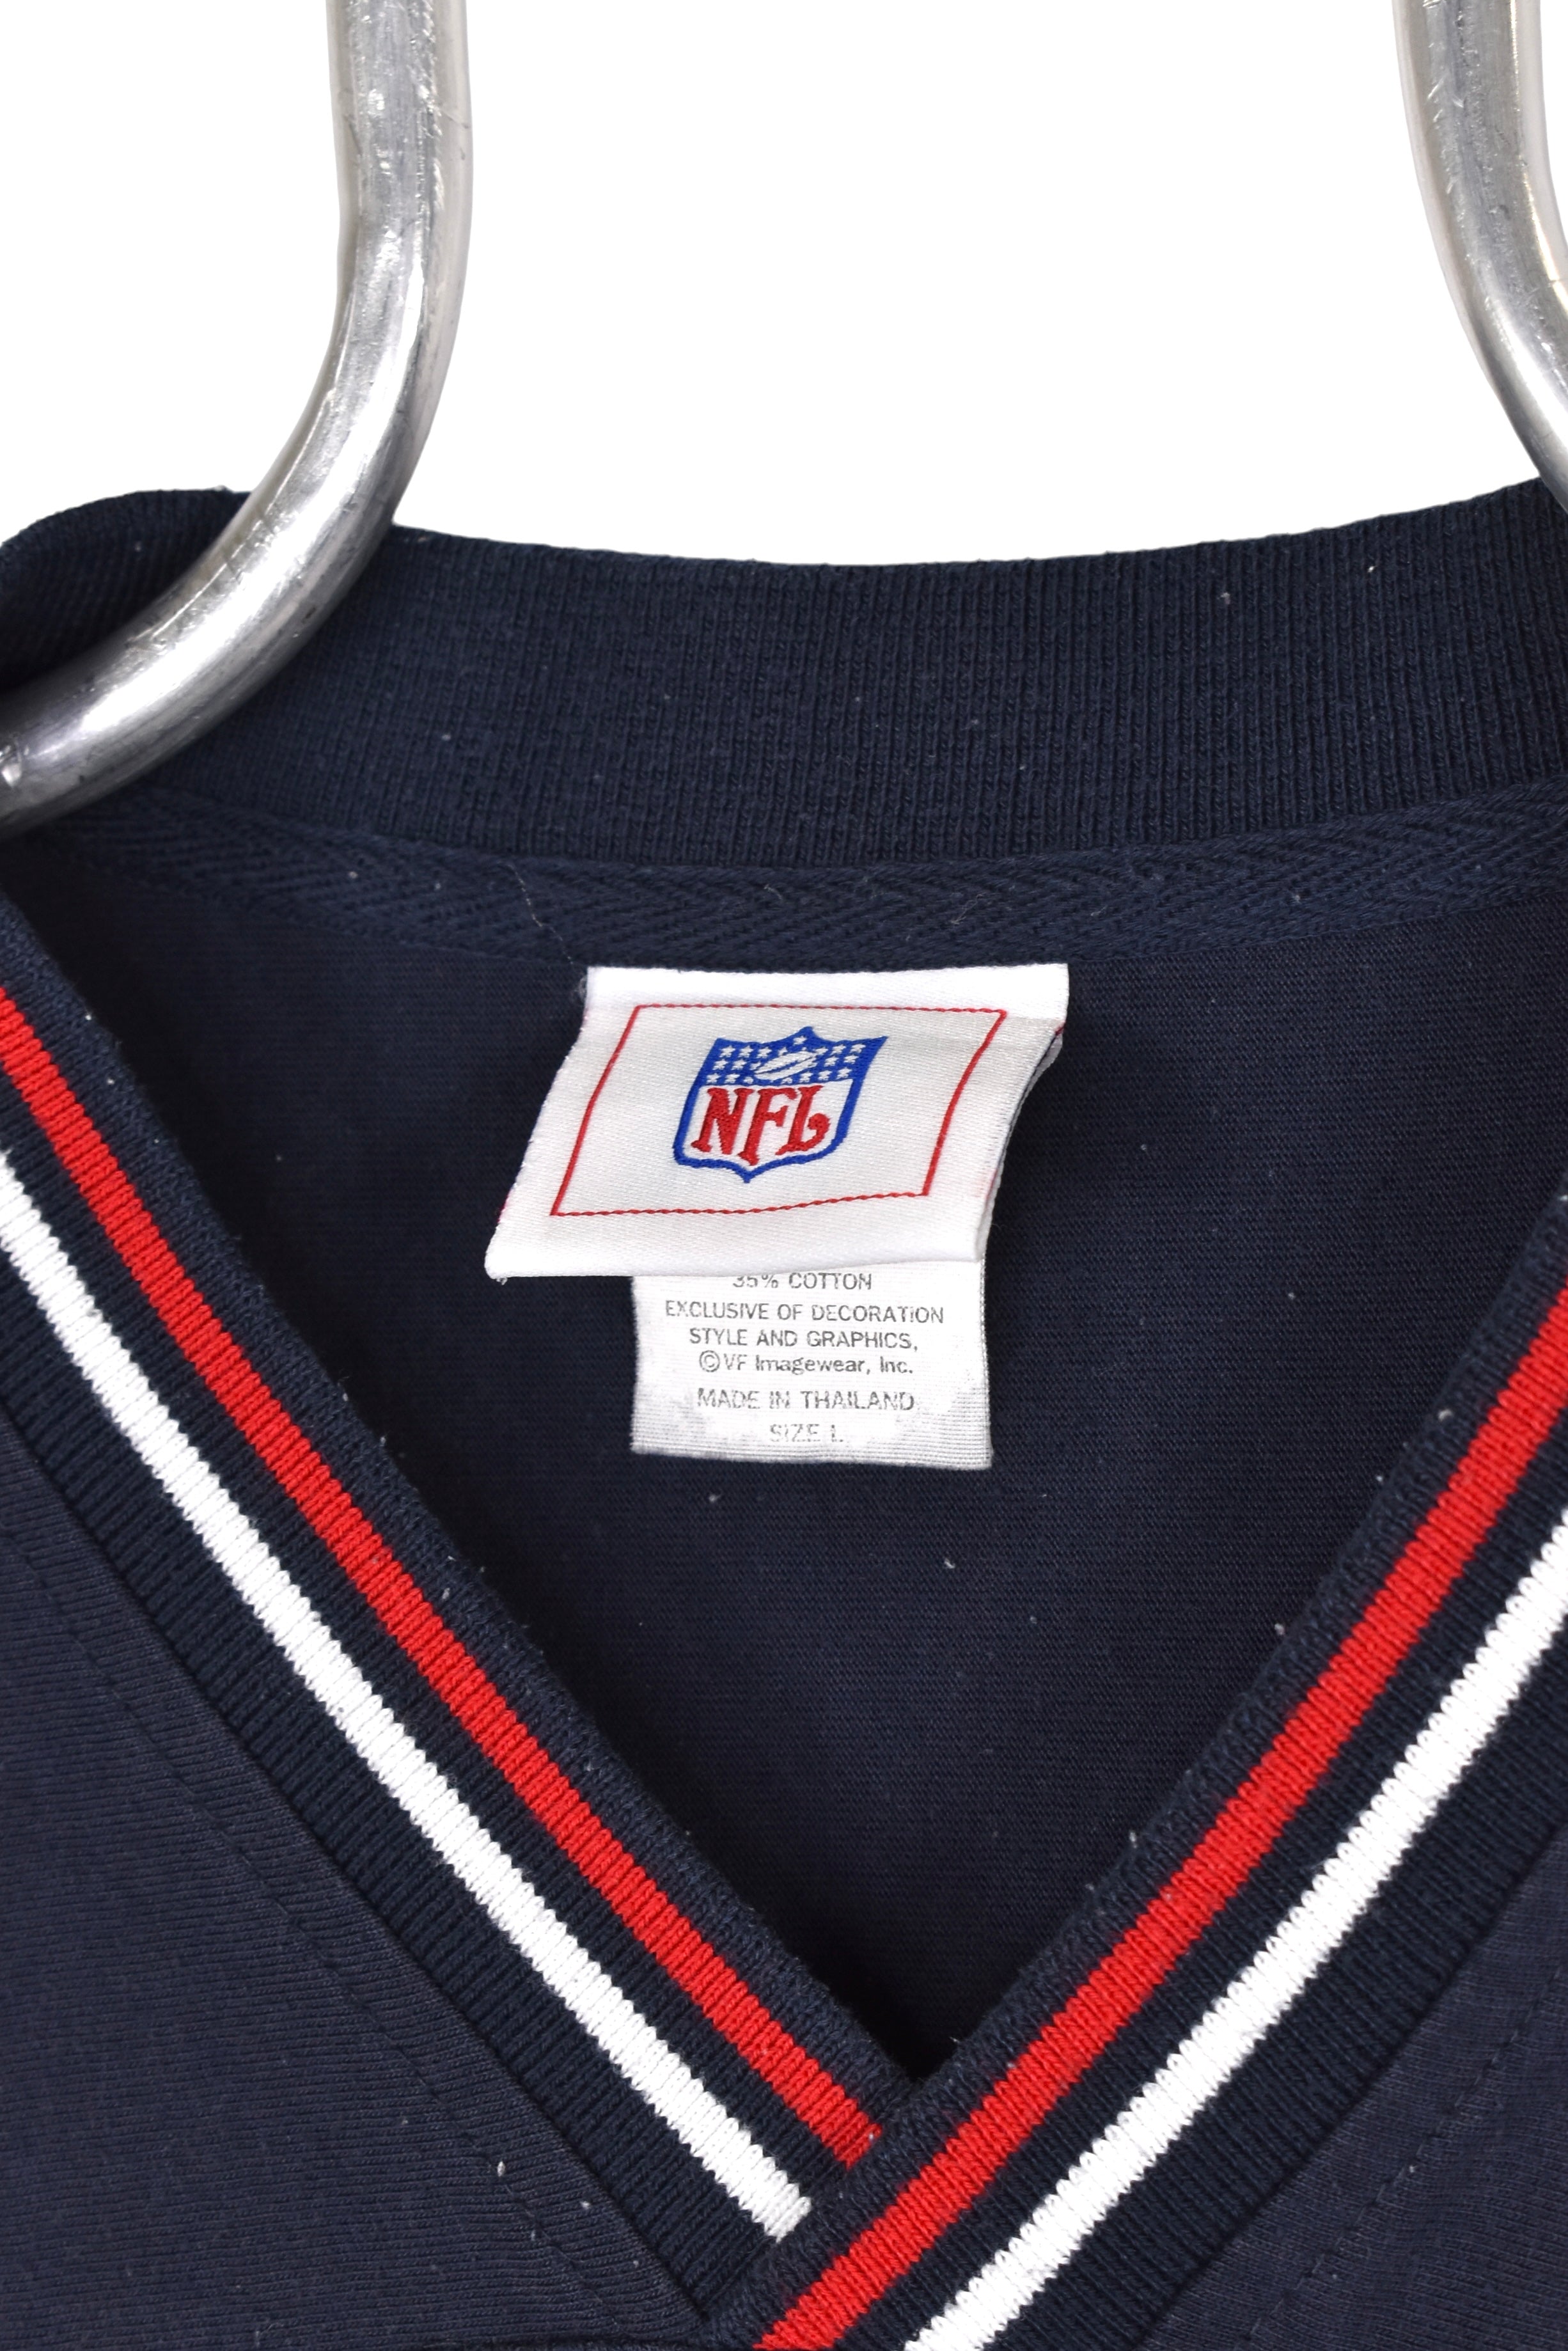 Vintage Houston Texans sweatshirt, NFL embroidered V neck - Large